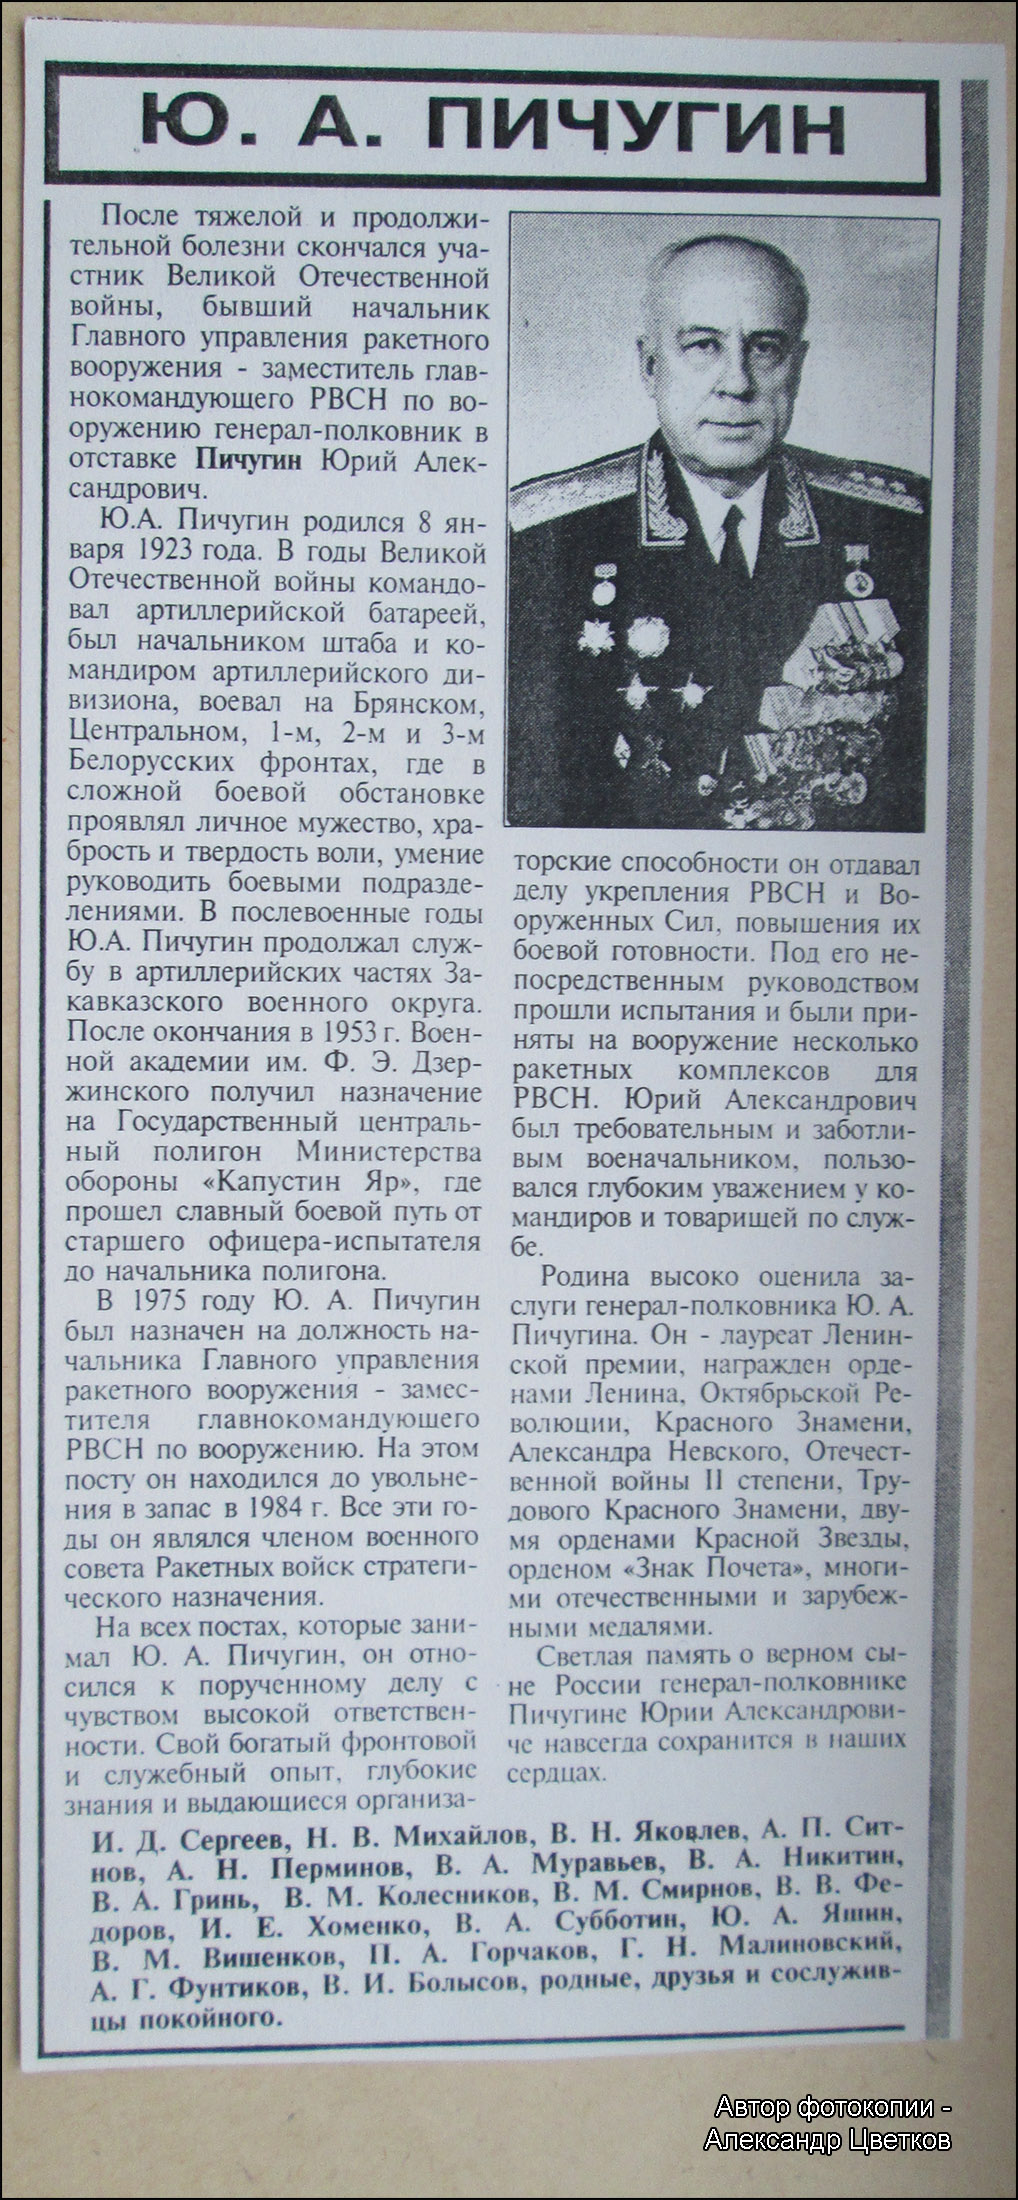 Некролог о смерти Ю.А. Пичугина (газета "Красная звезда", февраль 2000 года)